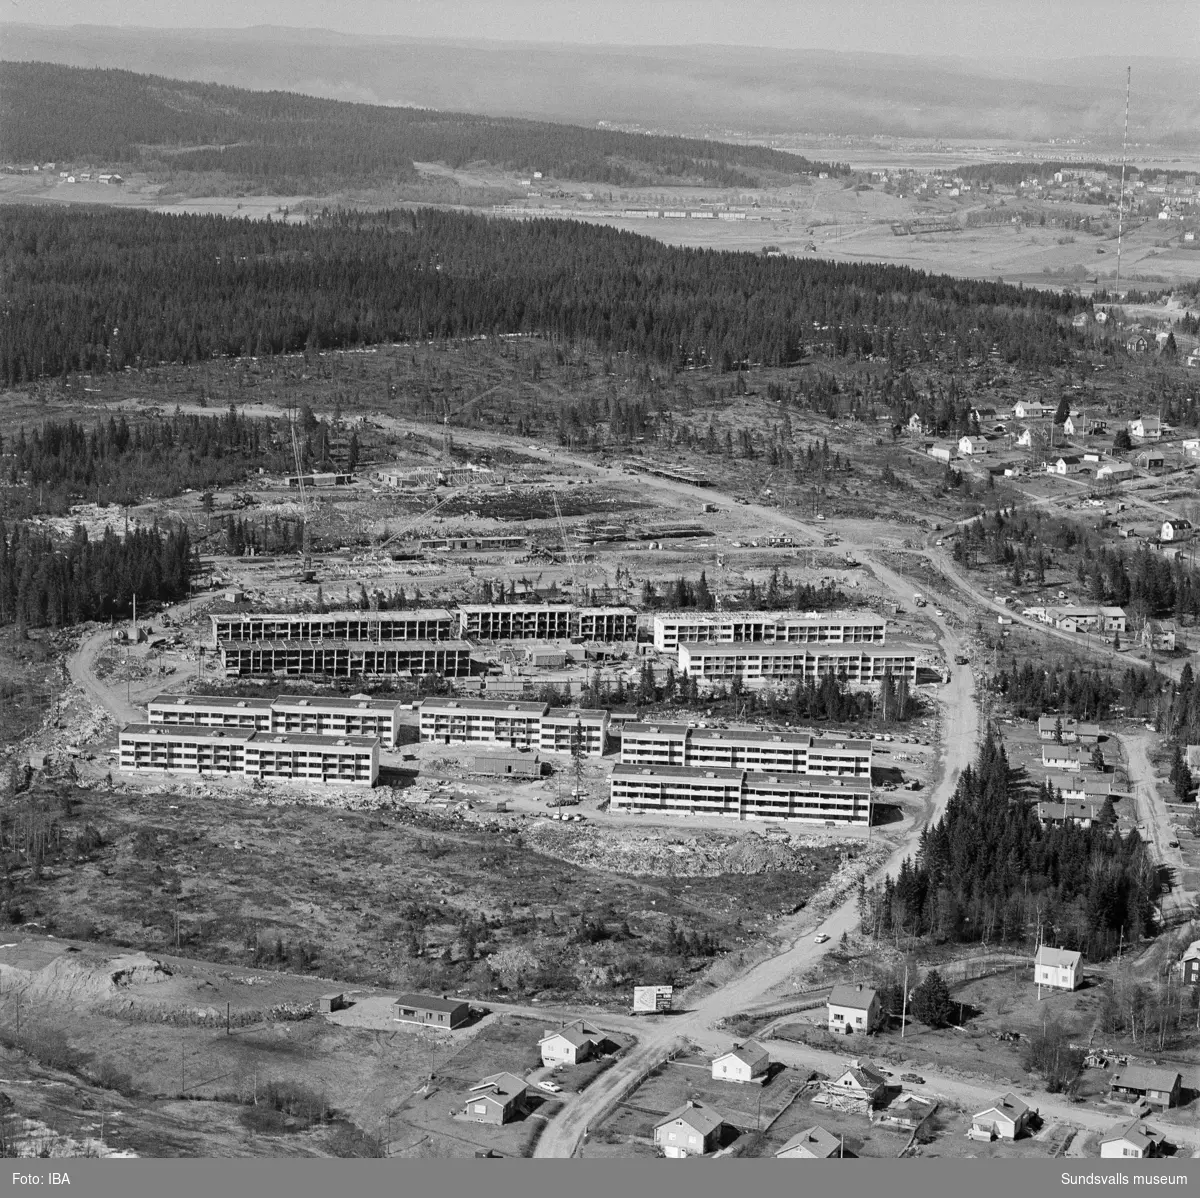 Flygbild beställd av H &N som bygger Bosvedjan "Översiktsbild av Bosvedjan, ett nytt bostadsområde som tillkom under åren 1966-1969 med 1022 lägenheter (HSB) och eget centrum."/e u Sköns kyrka 150 år.